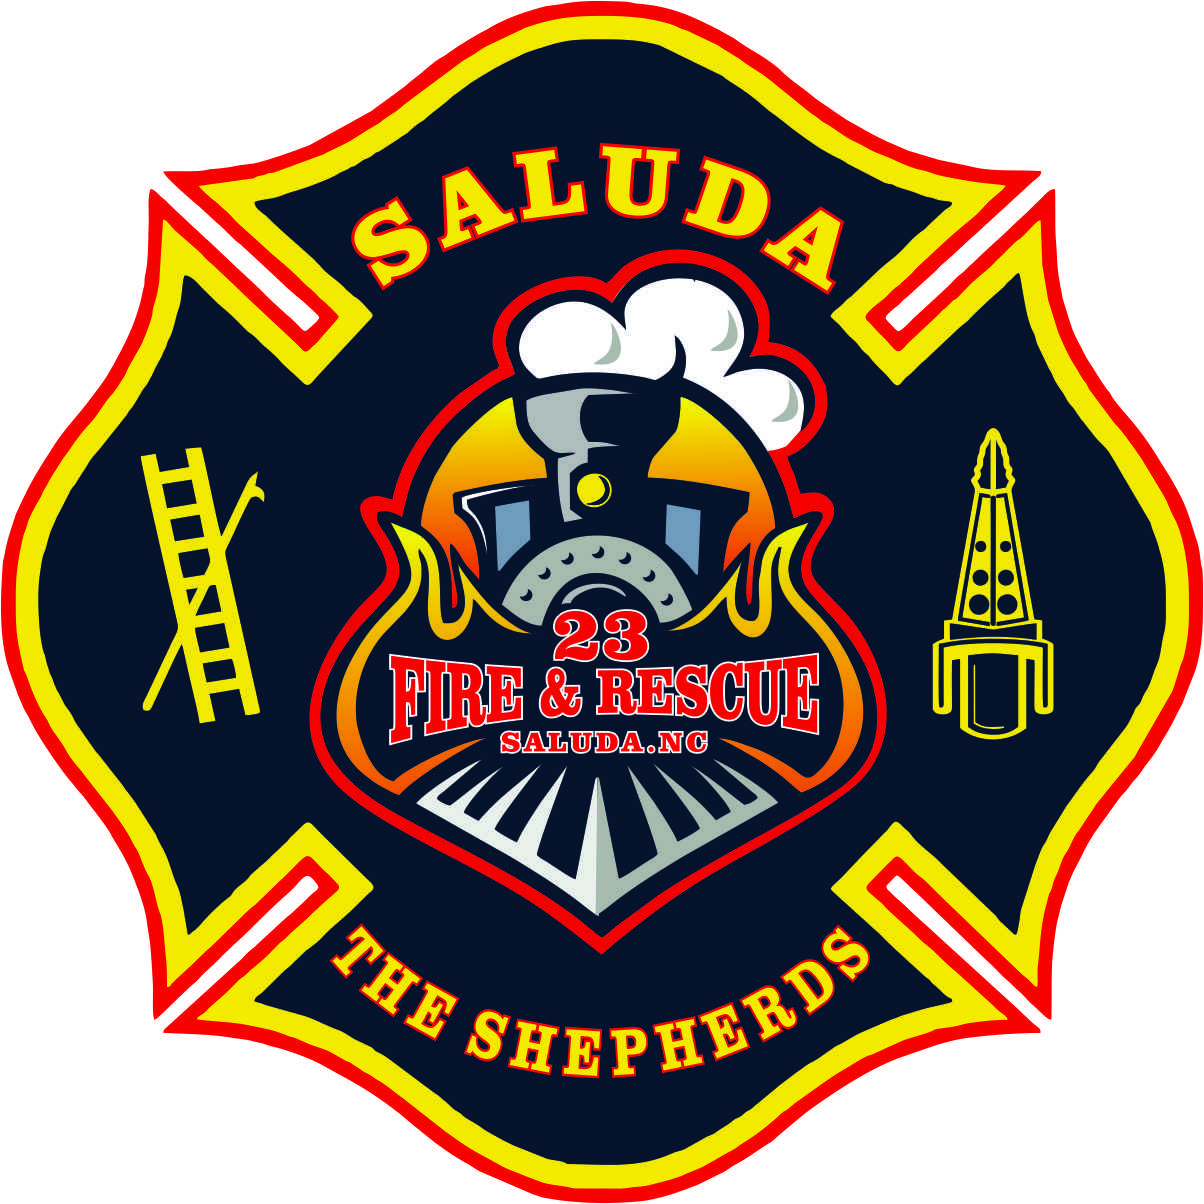 Saluda Fire & Rescue